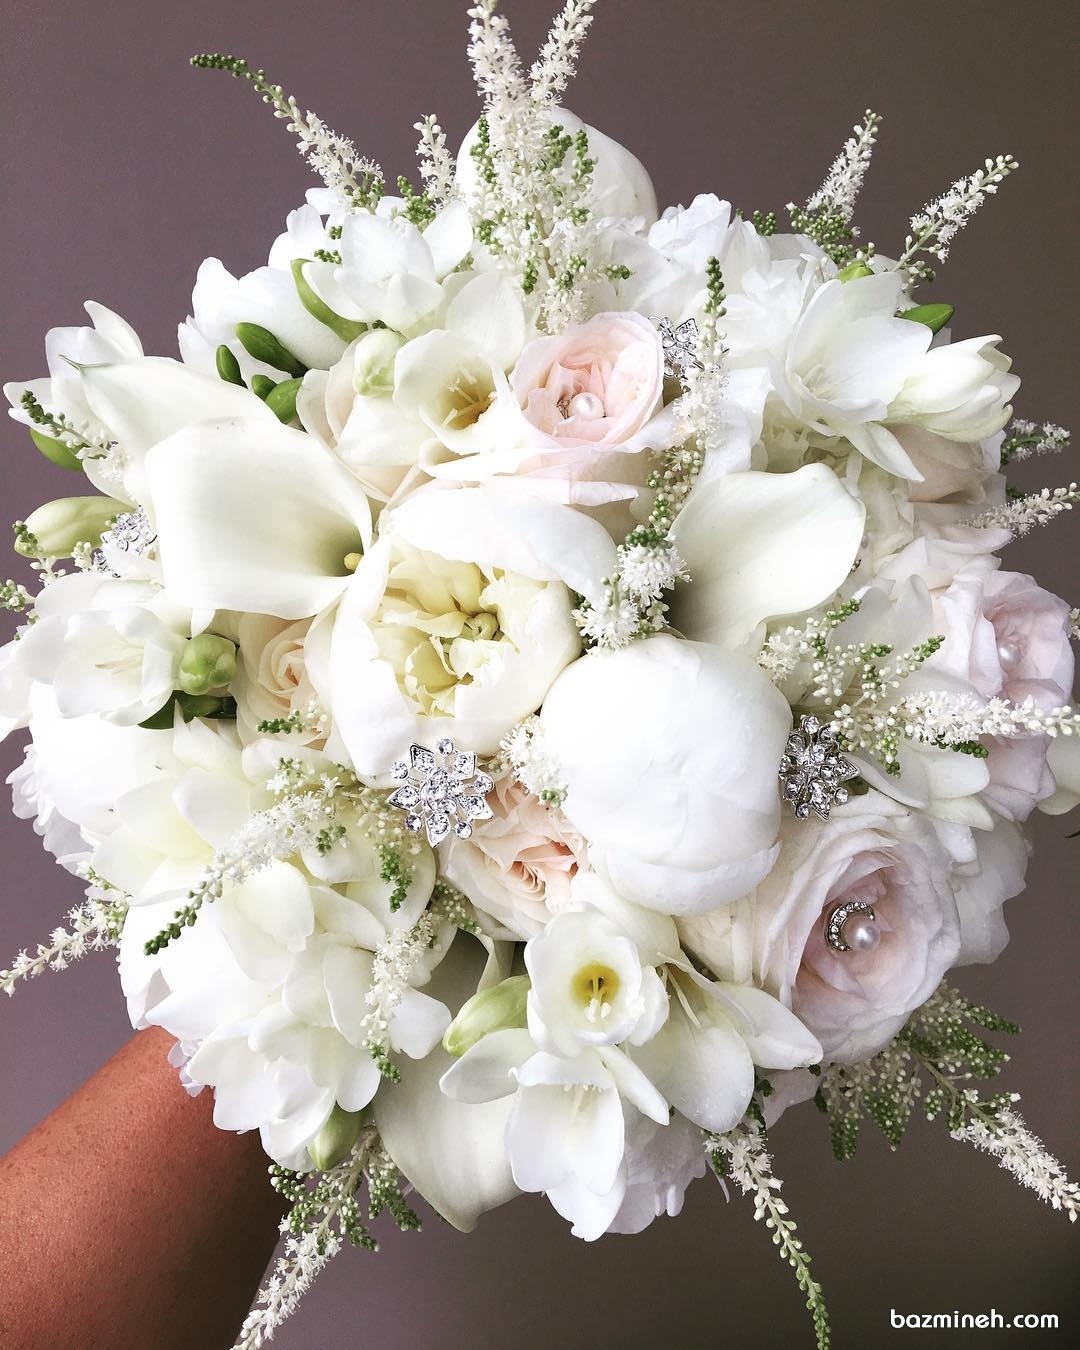 دسته گل زیبای عروس مناسب عروس خانم های جوان با استایل یونیک